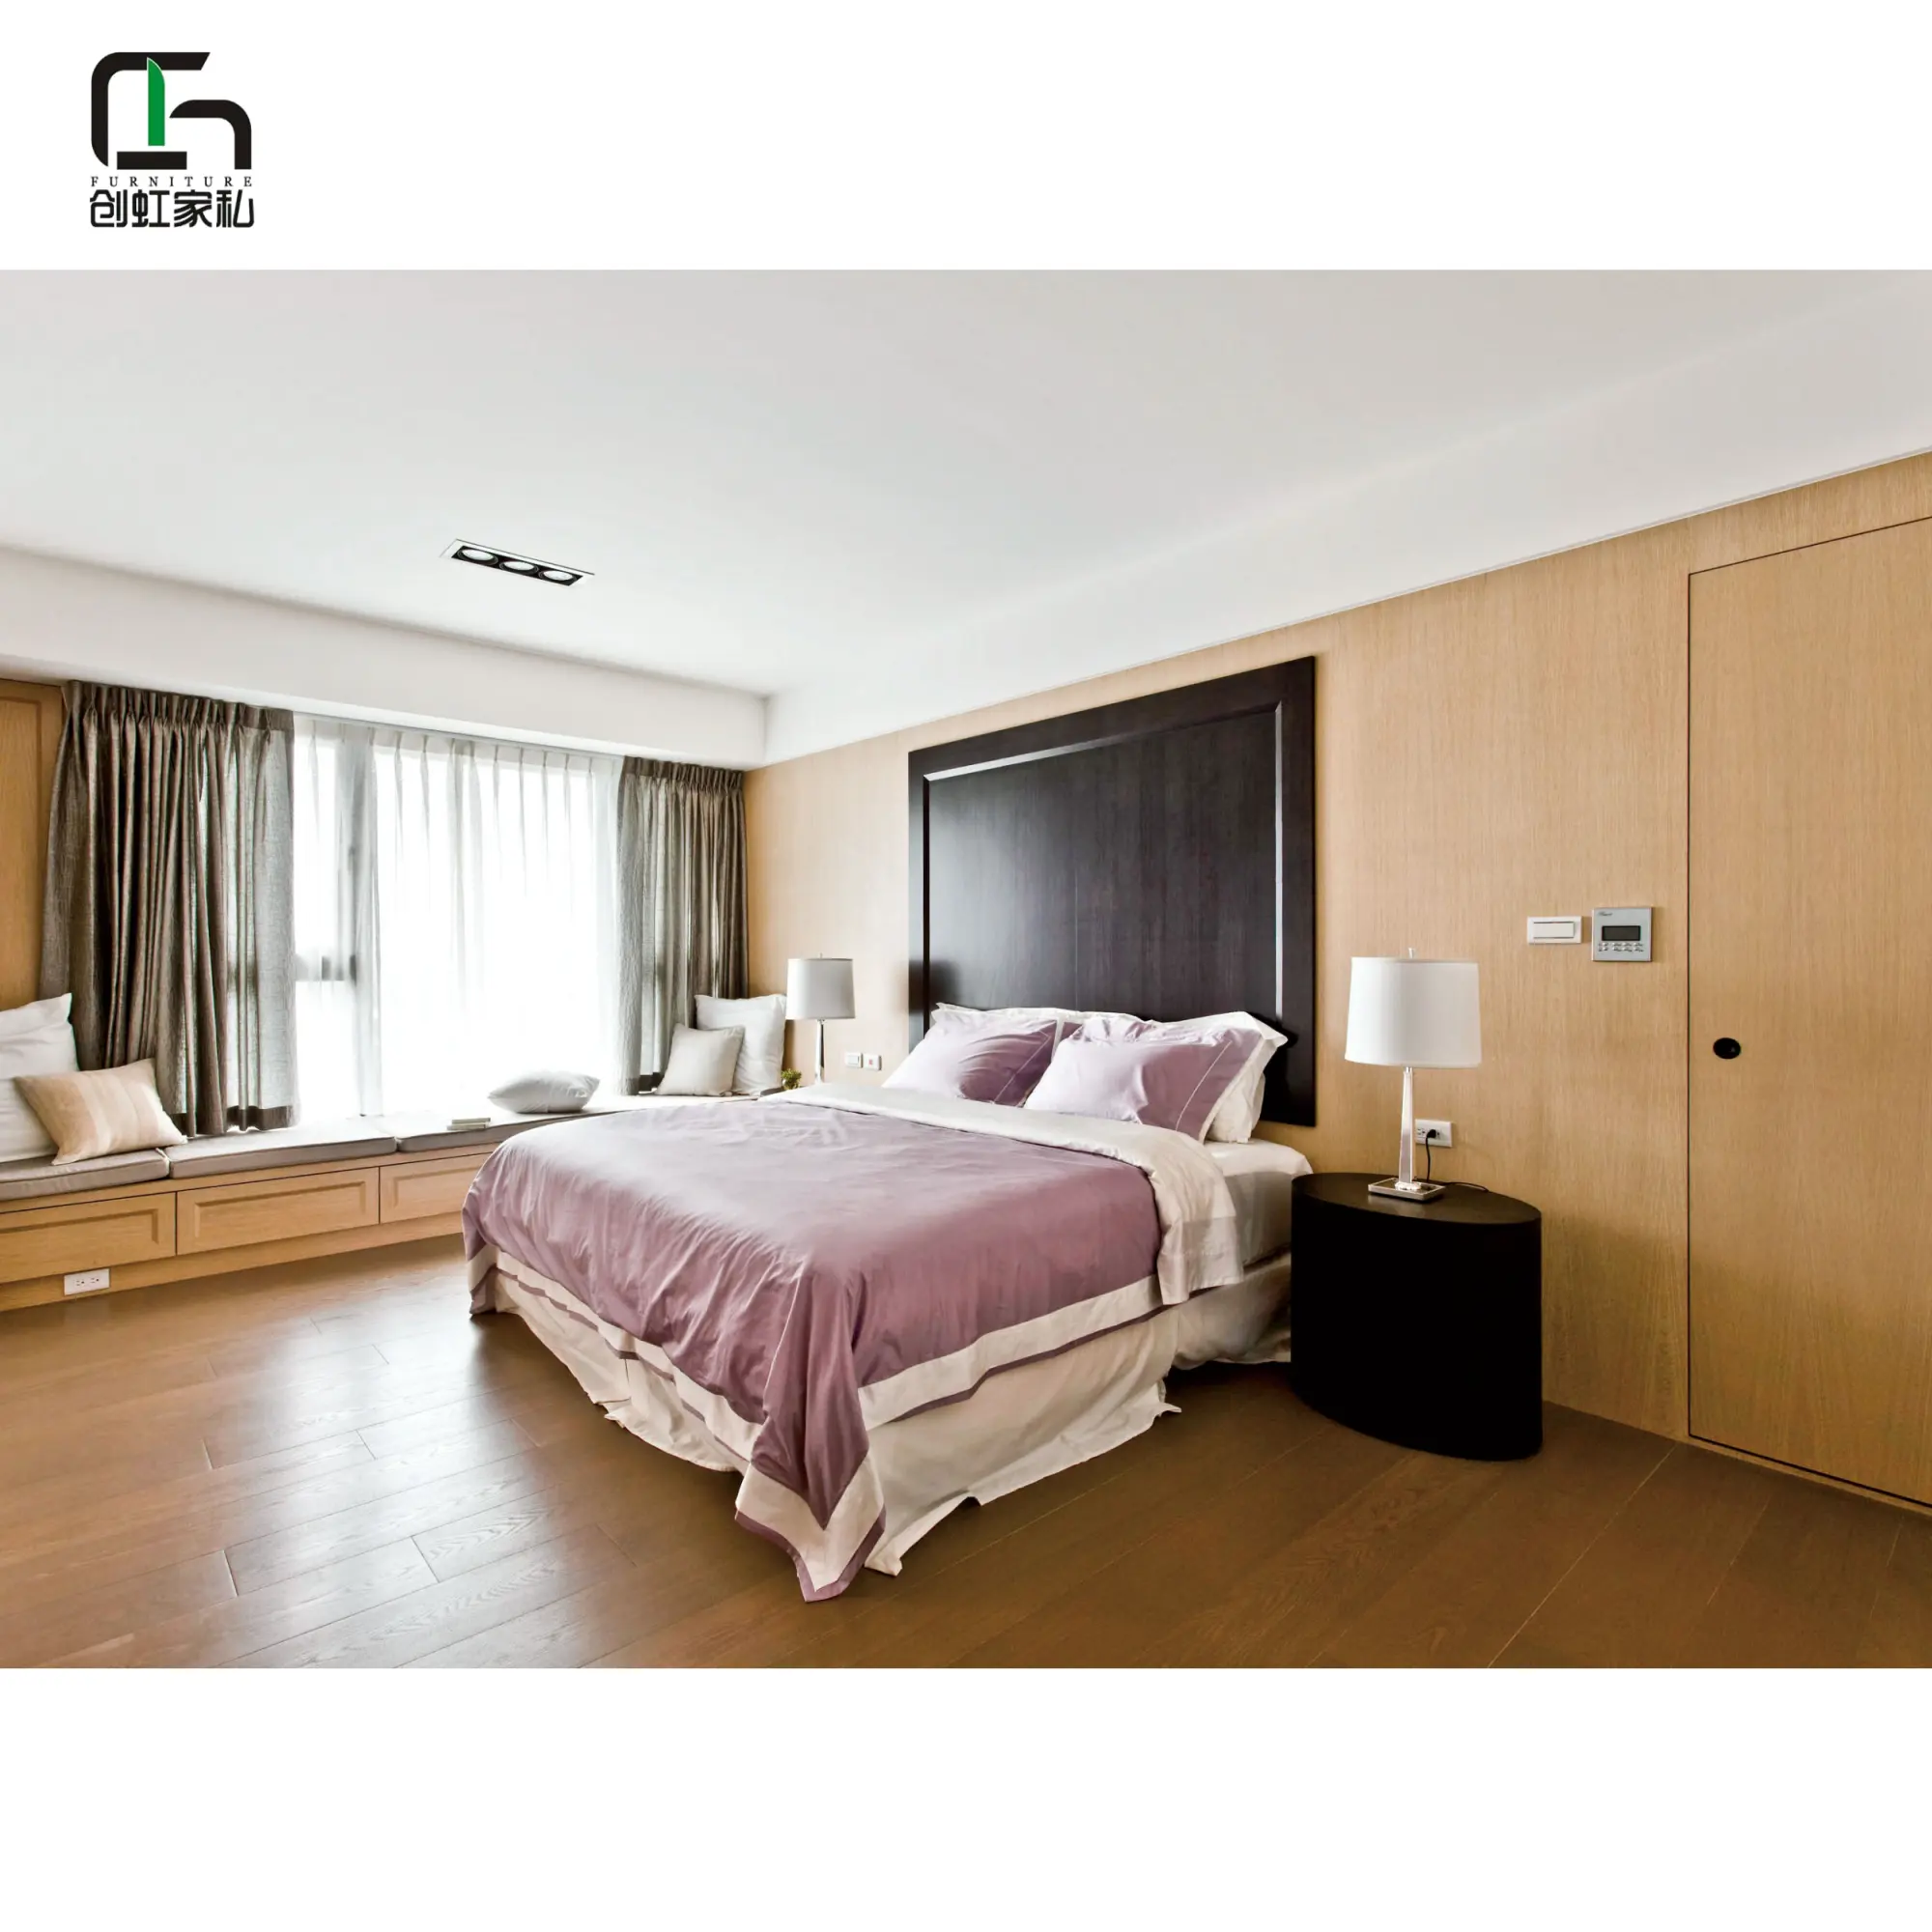 Proveedor profesional de muebles para proyectos hoteleros, diseño moderno de madera para hoteles, apartamentos y villas